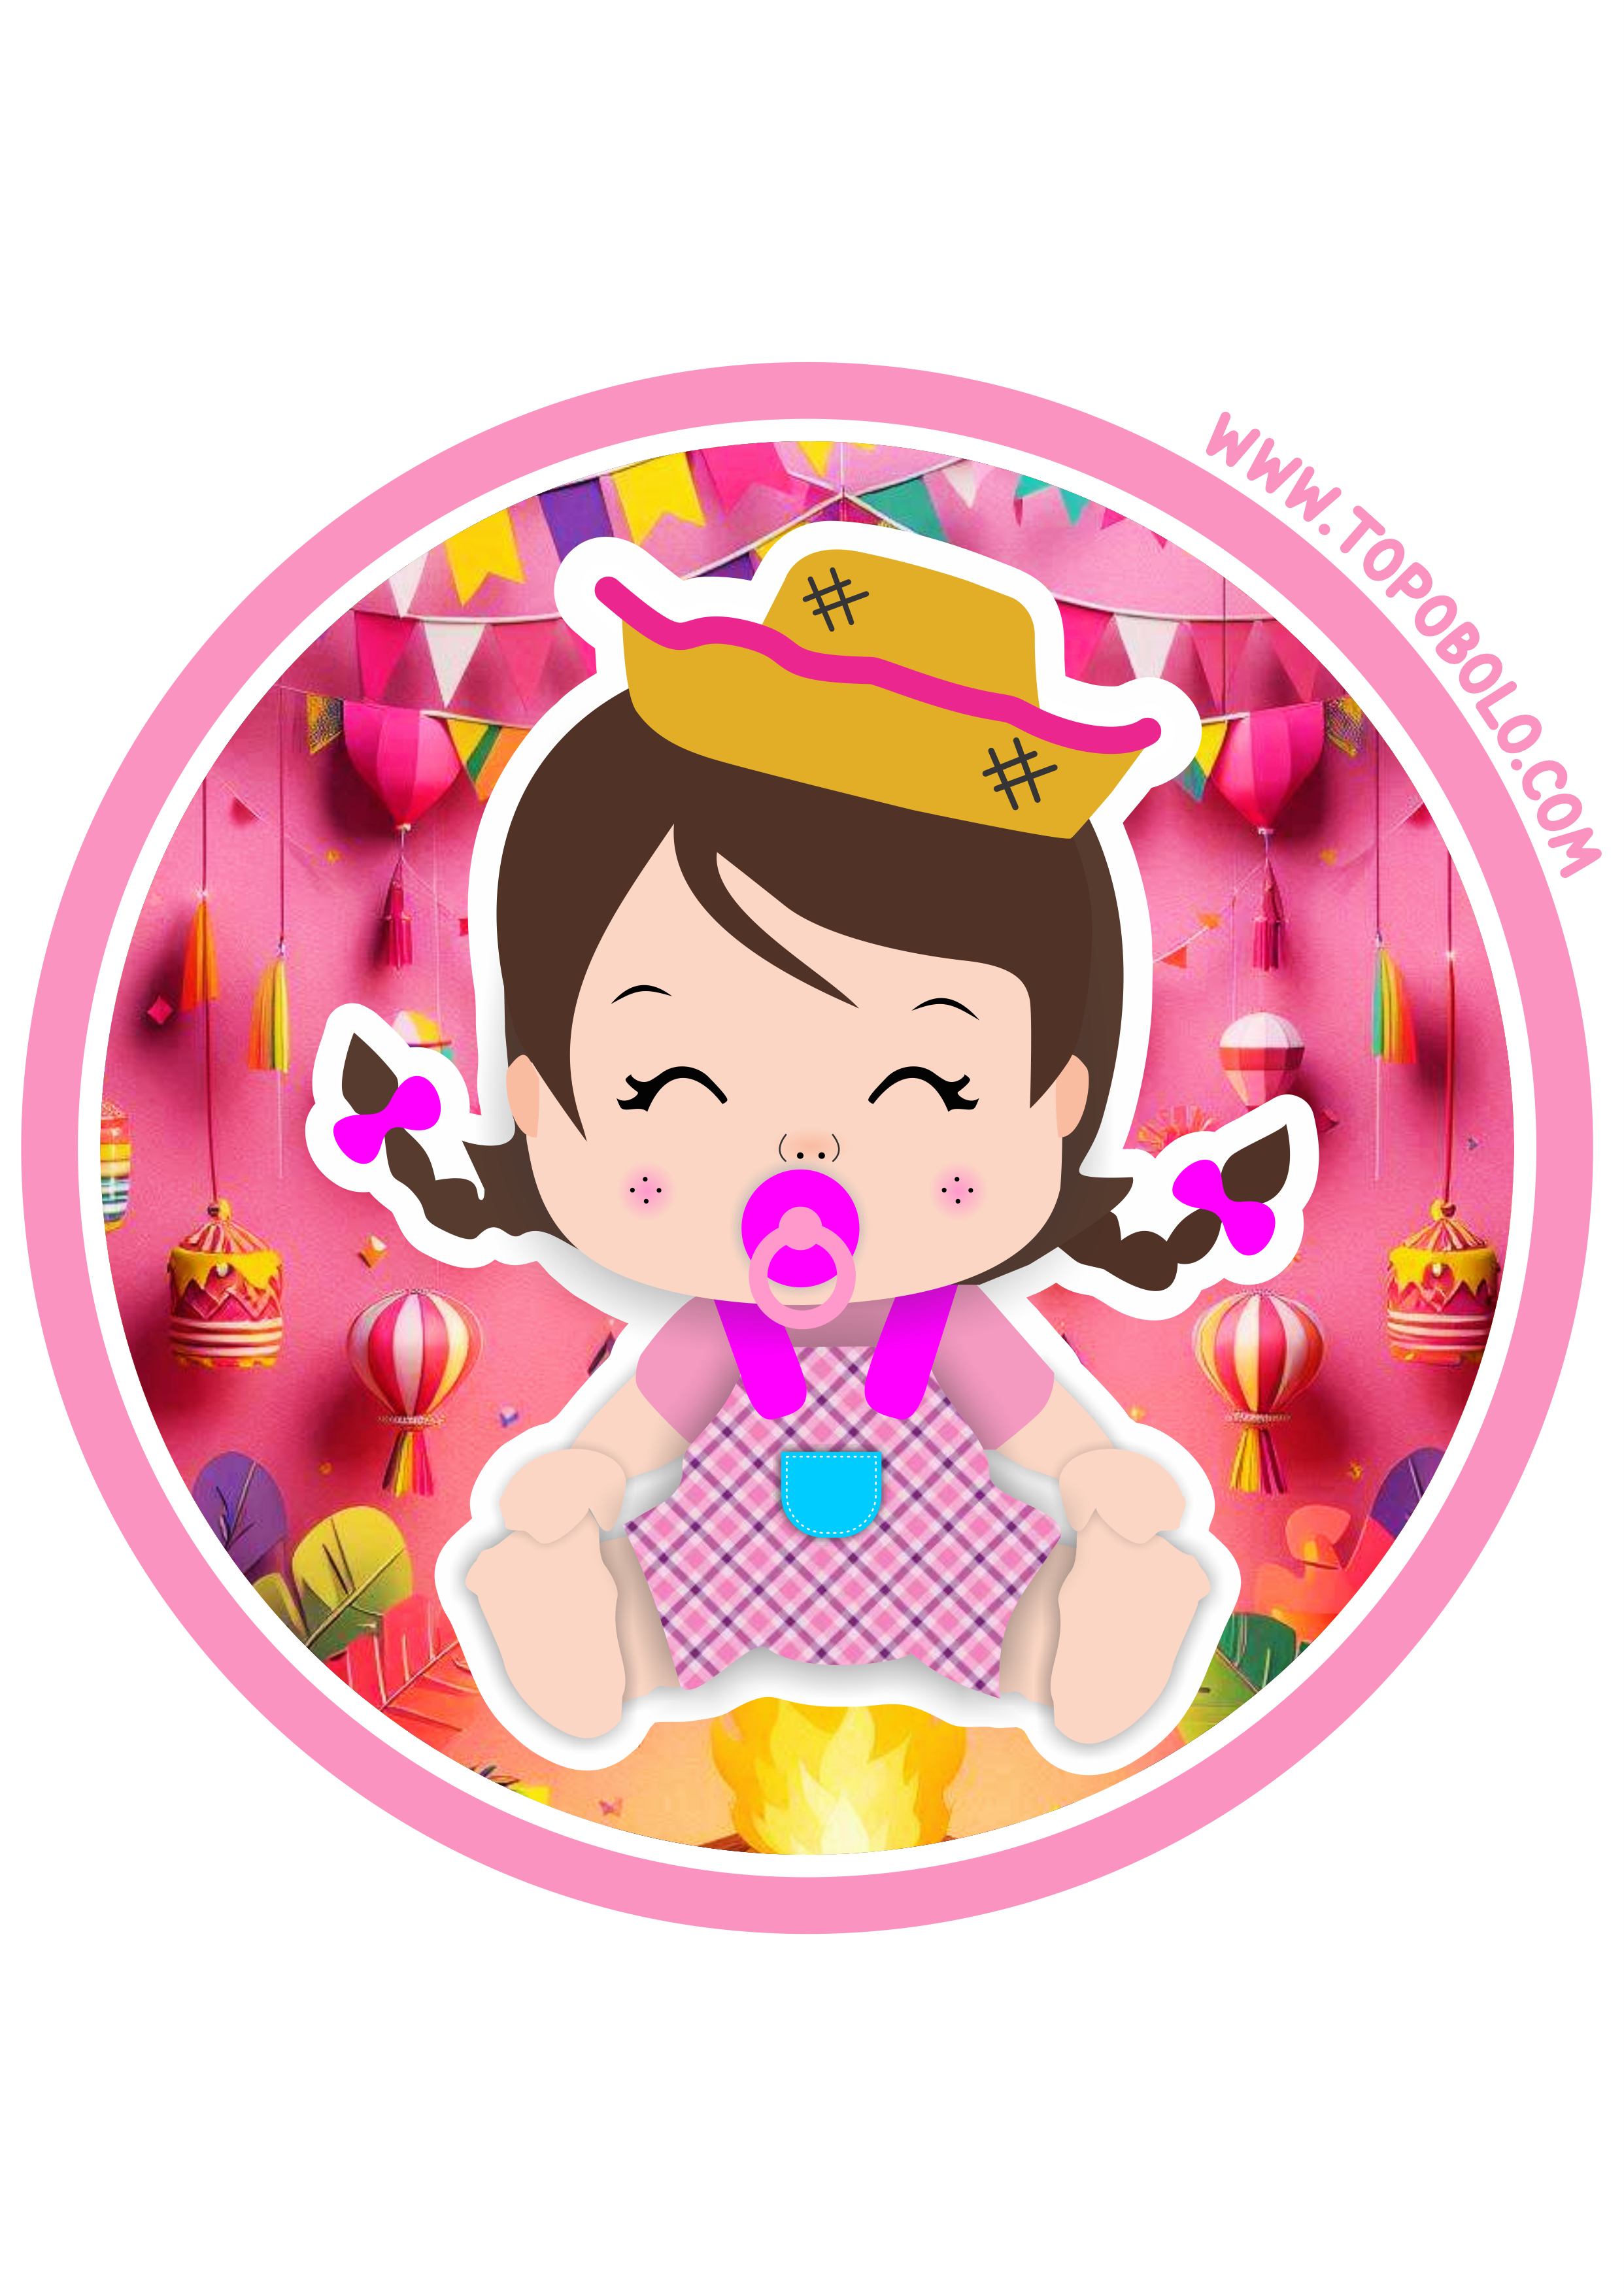 Festa junina adesivo redondo para chá de fralda baby tag sticker arraial rosa png